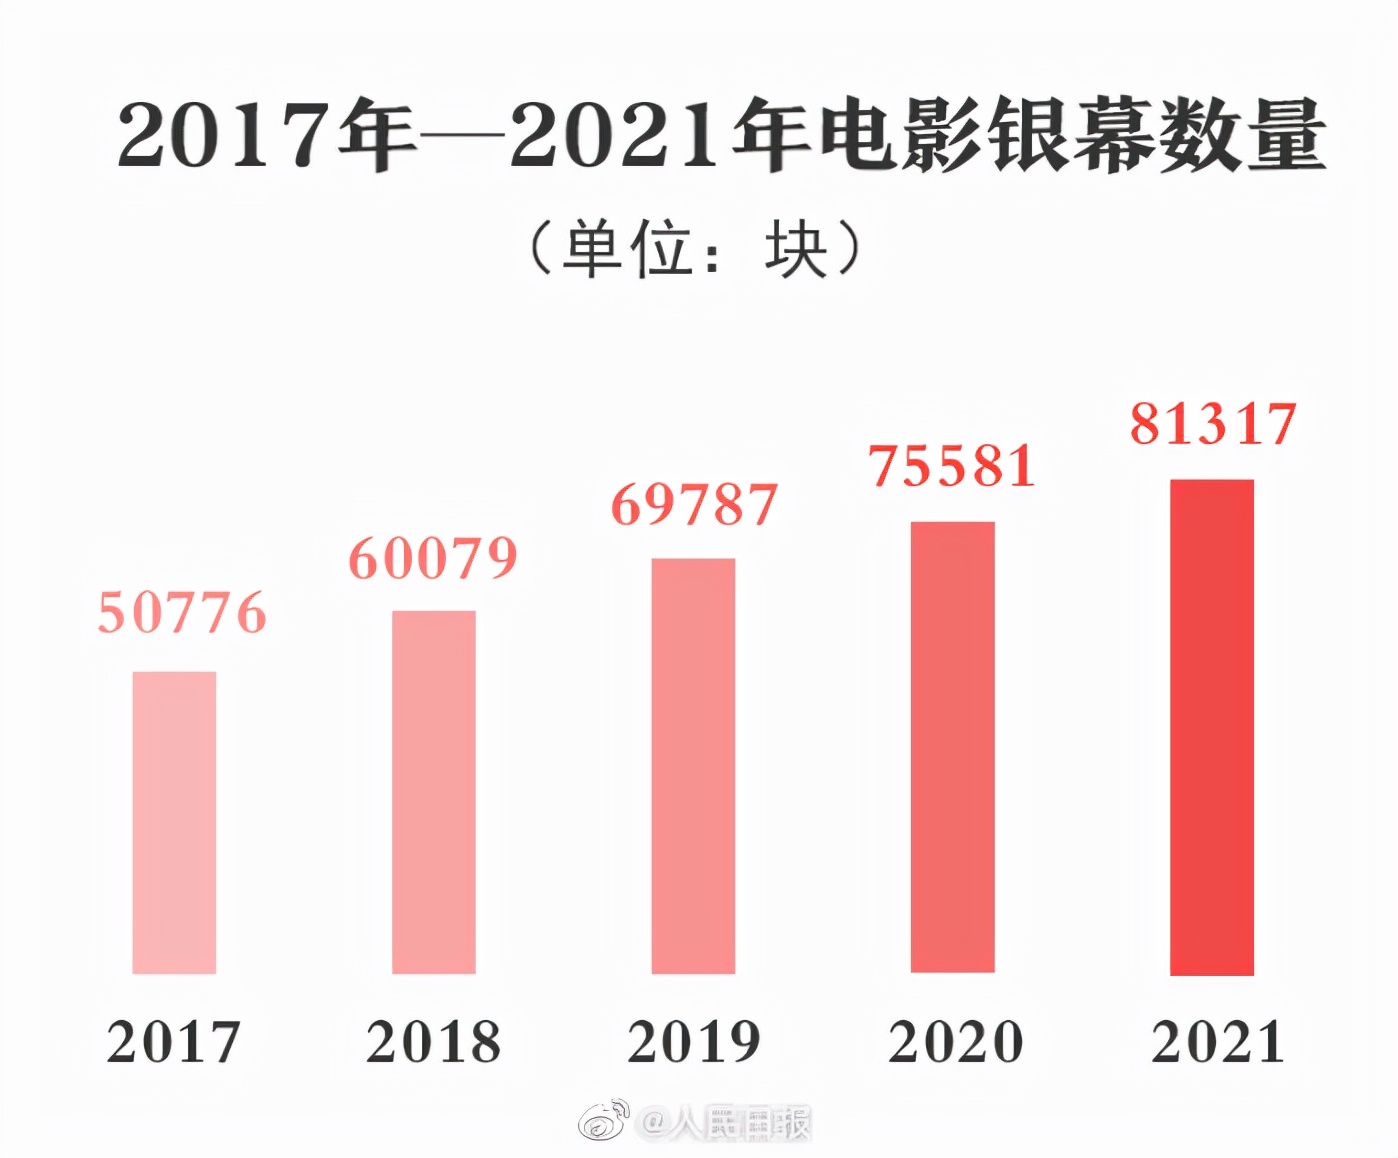 2021中国电影总票房和银幕数世界第一